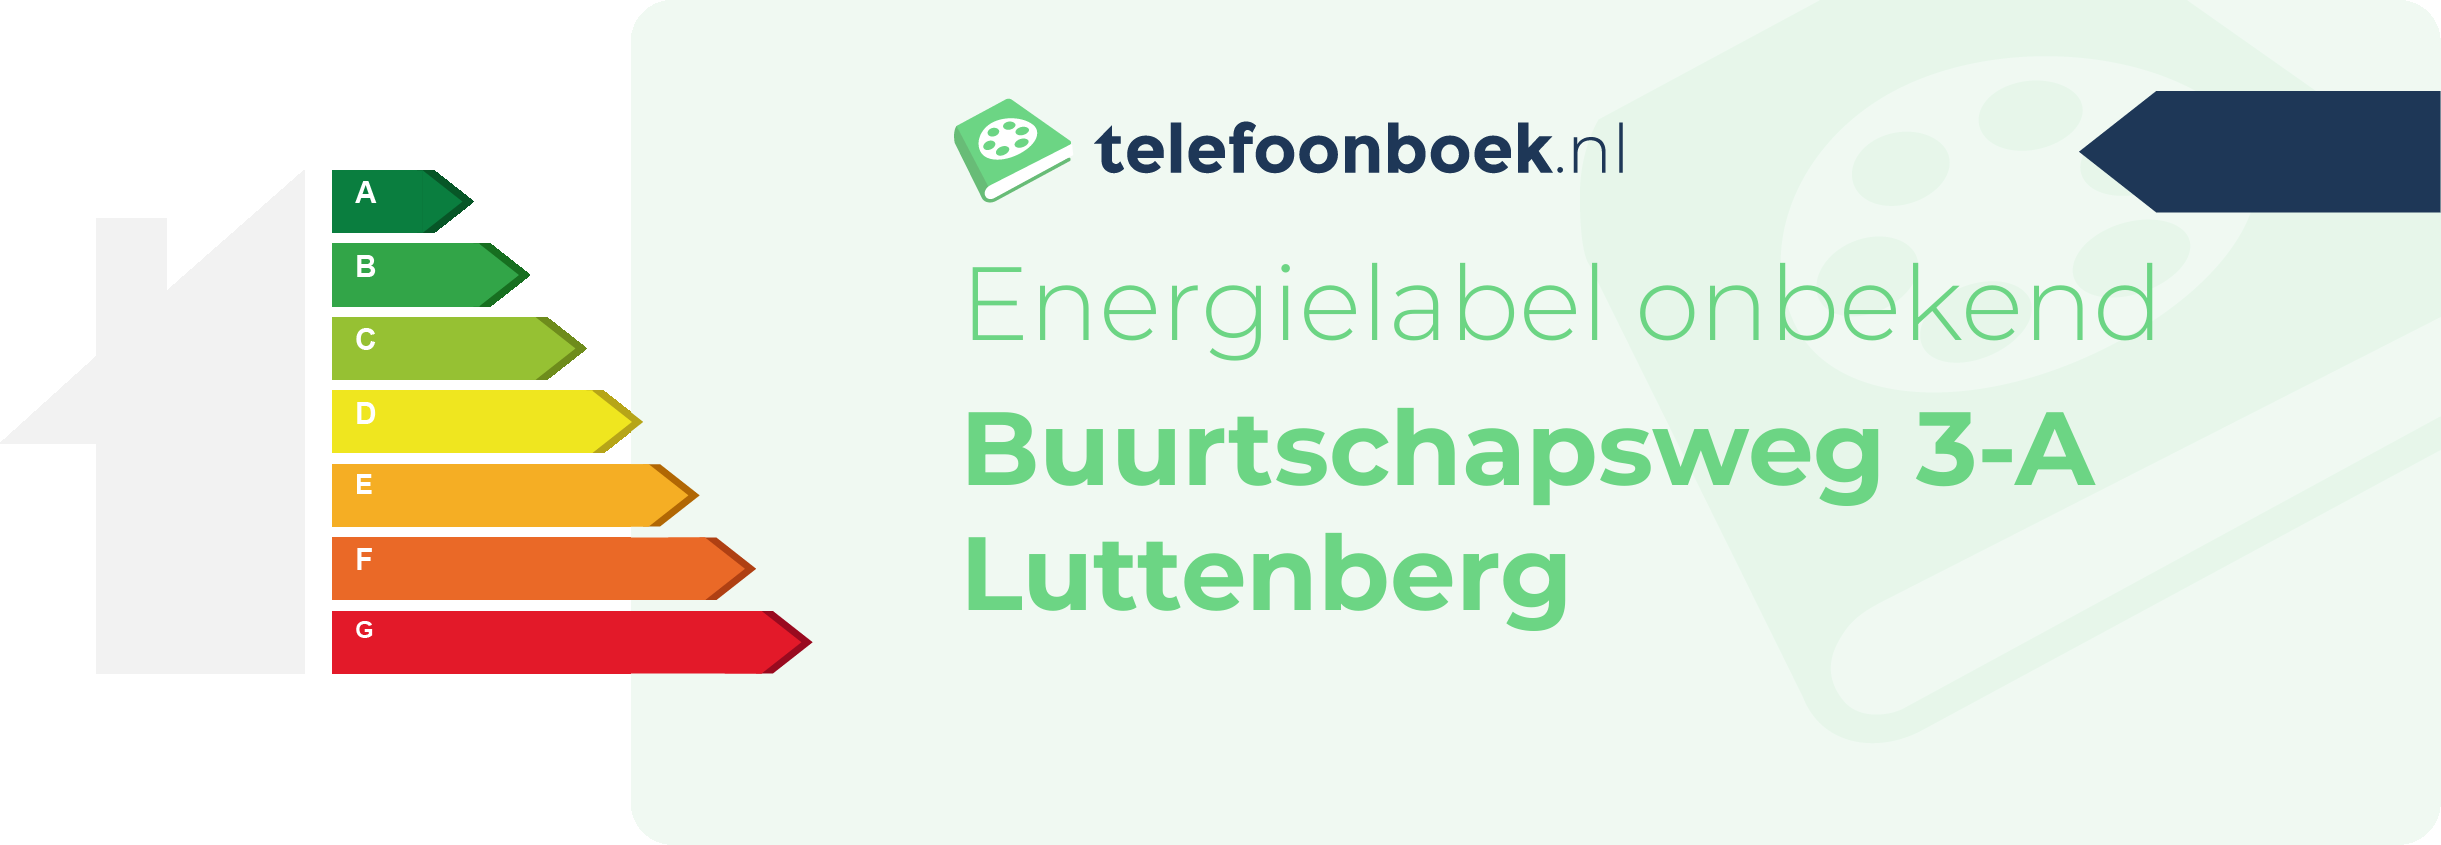 Energielabel Buurtschapsweg 3-A Luttenberg